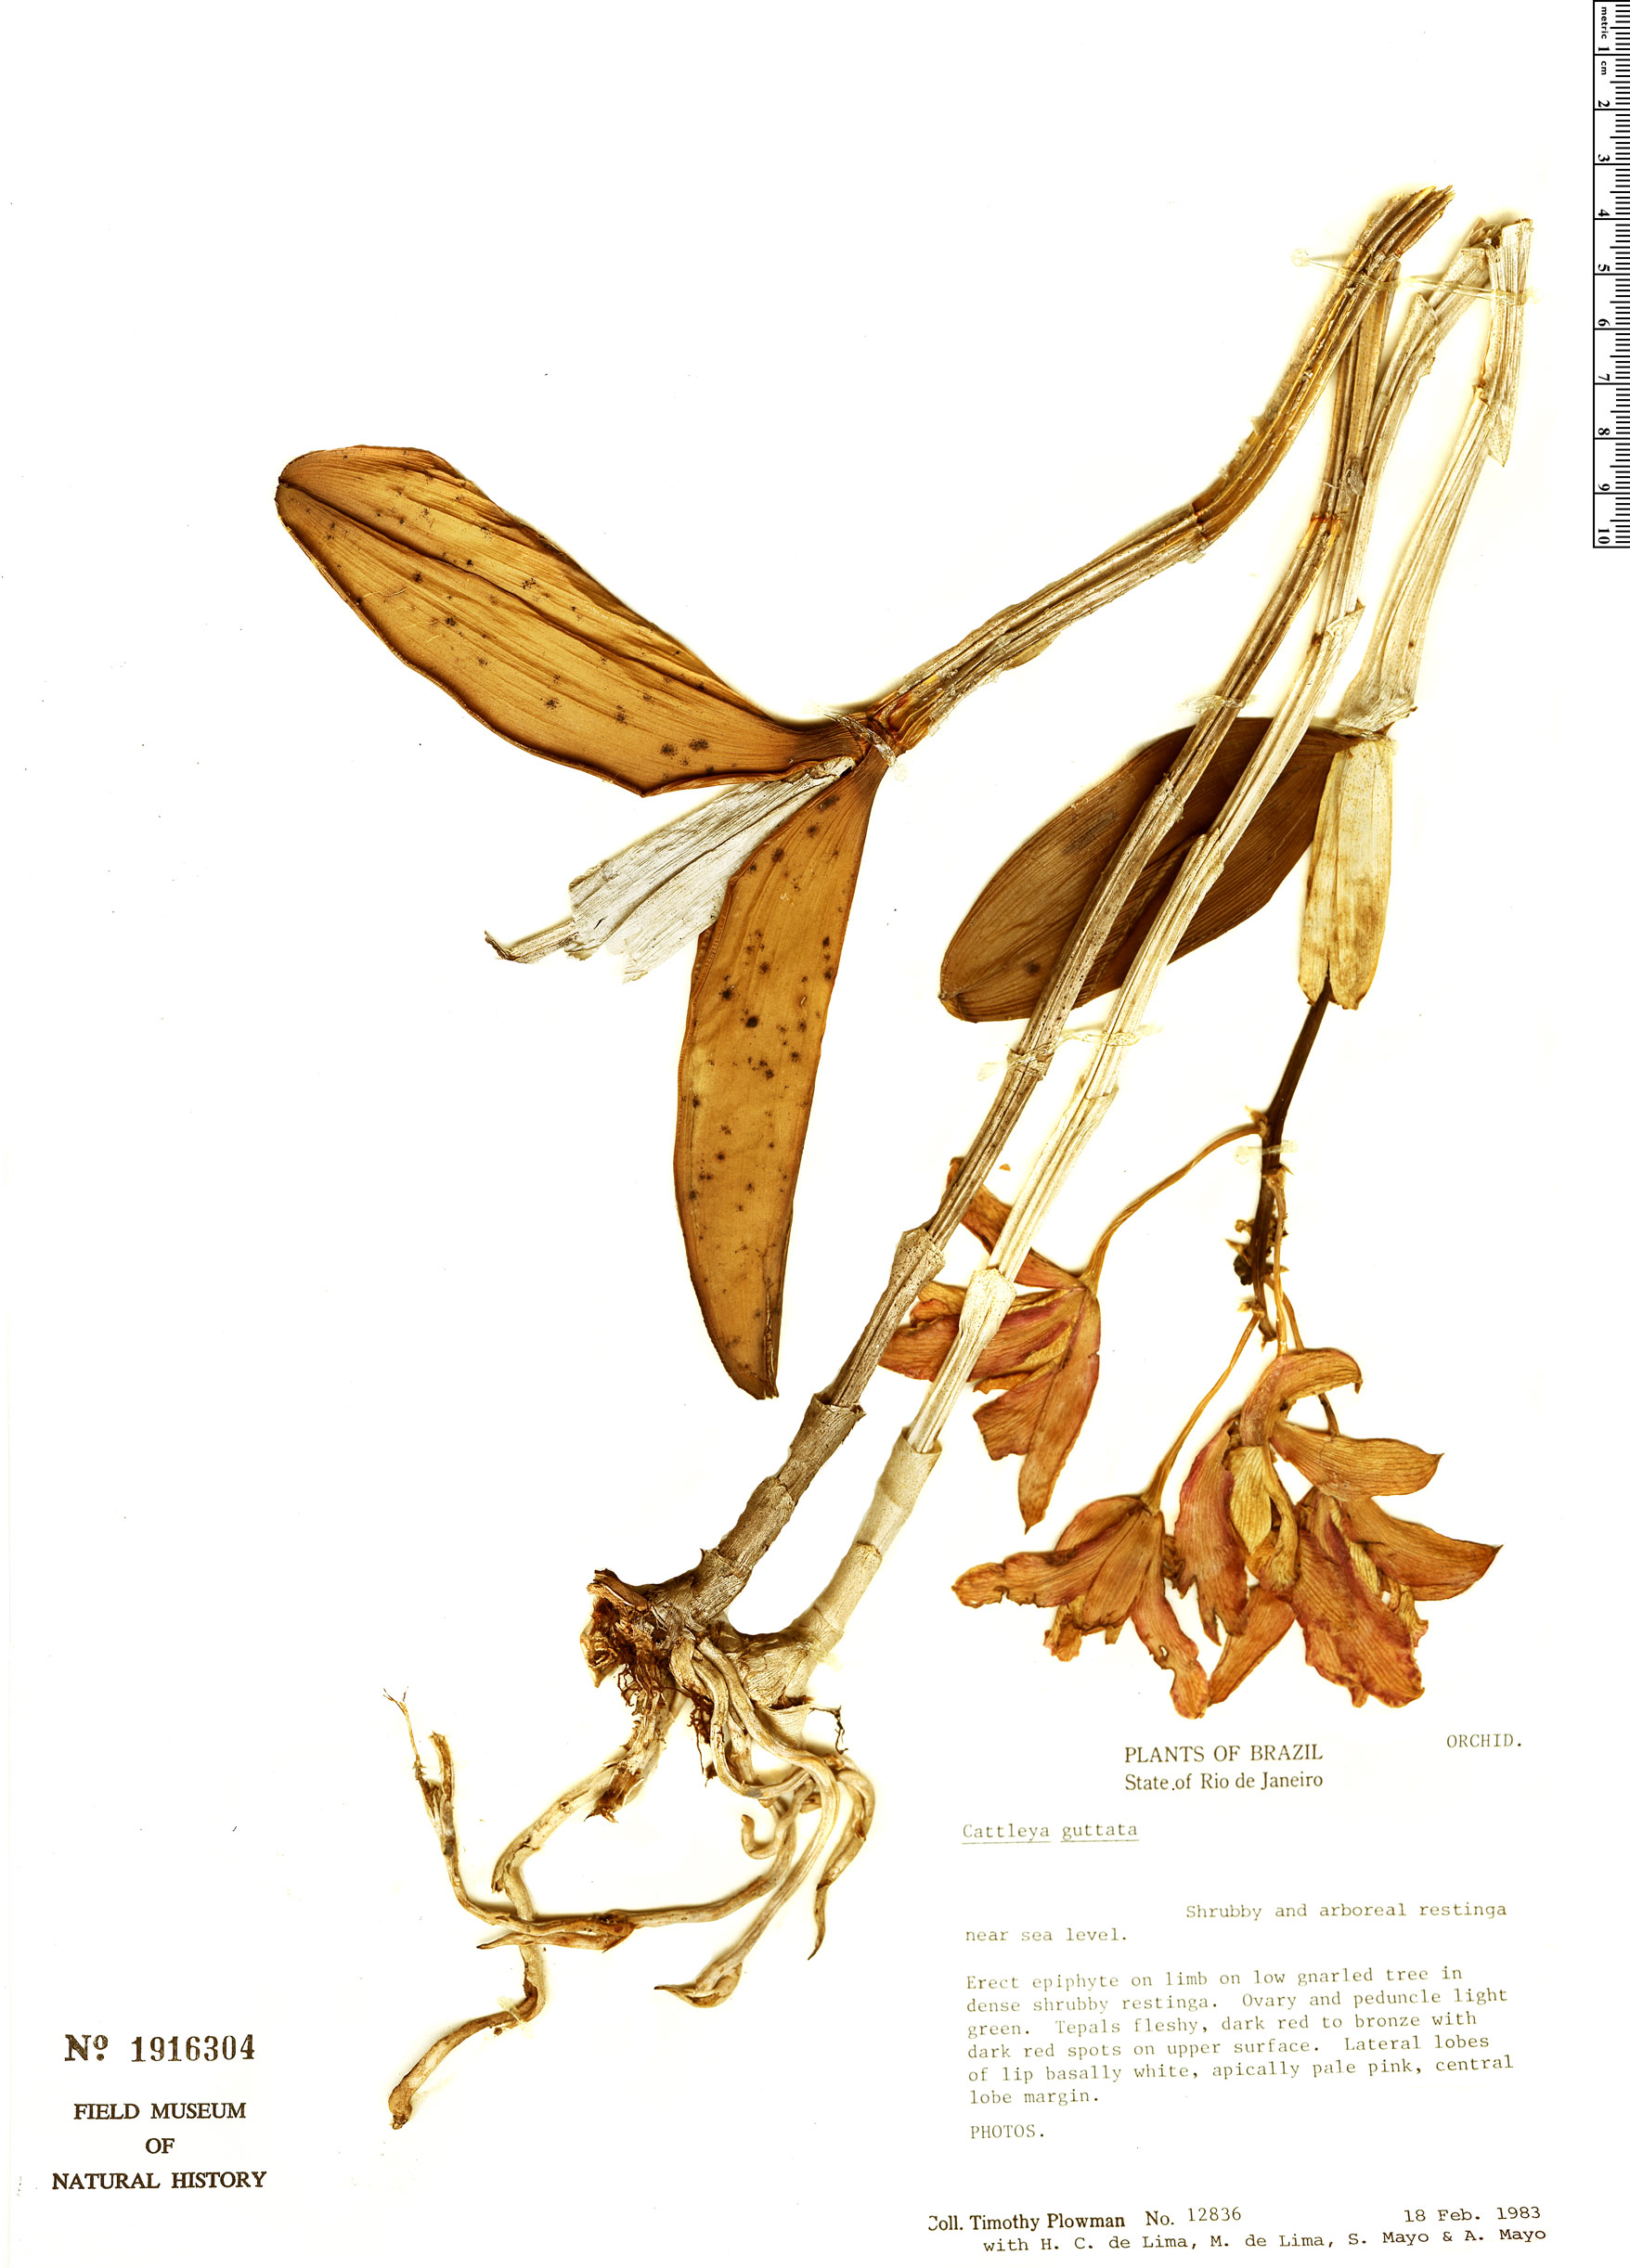 Cattleya guttata image